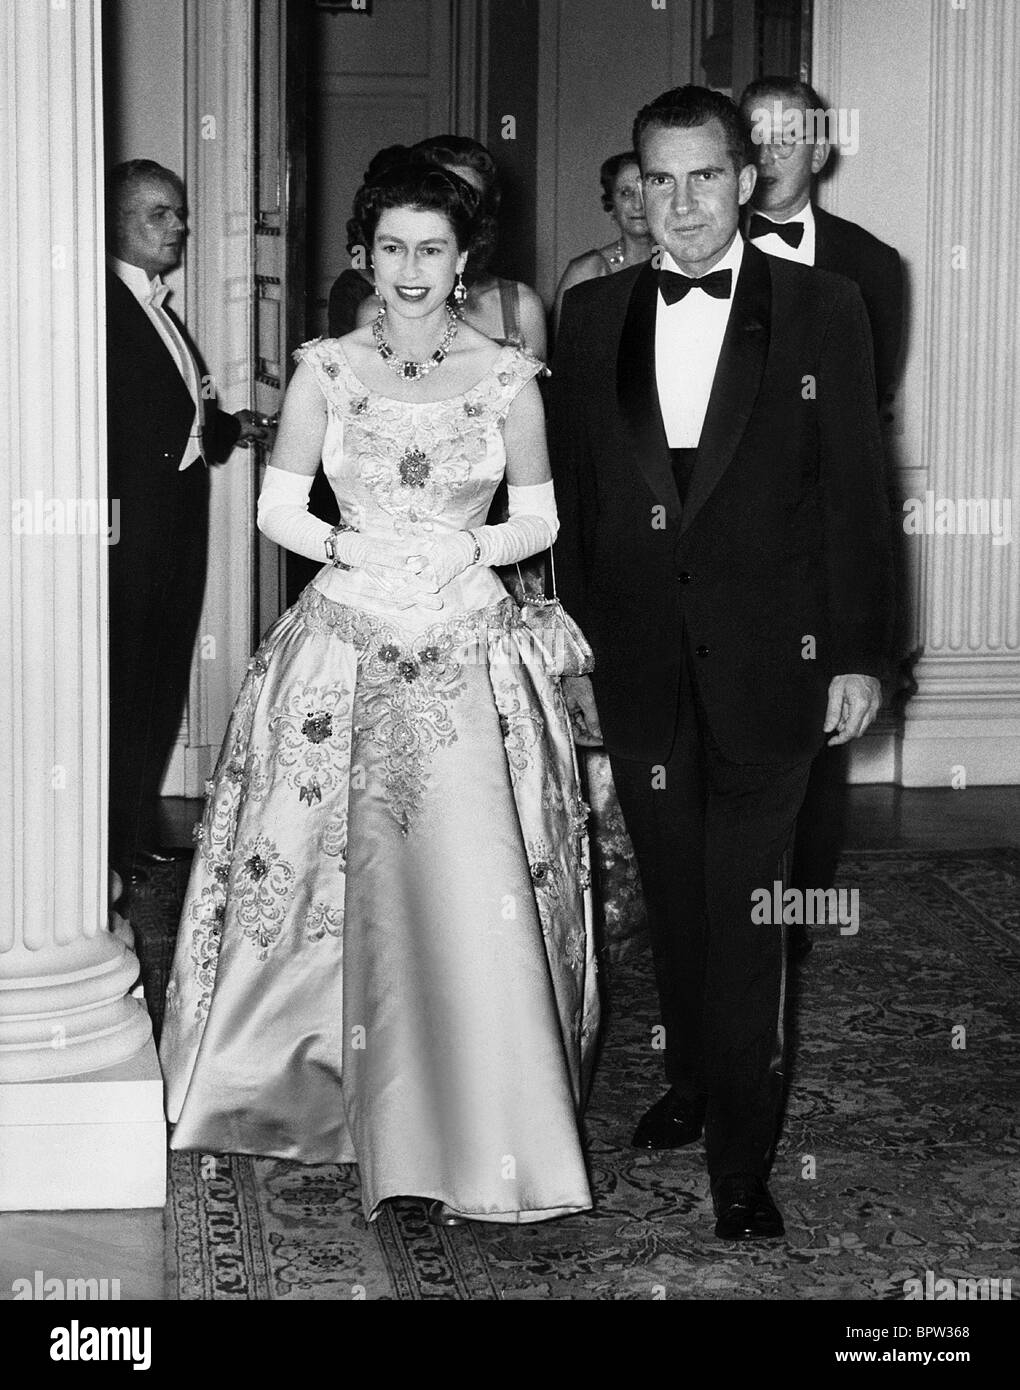 QUEEN ELIZABETH II & Richard Nixon regina dell'Inghilterra il 10 giugno 1958 Foto Stock